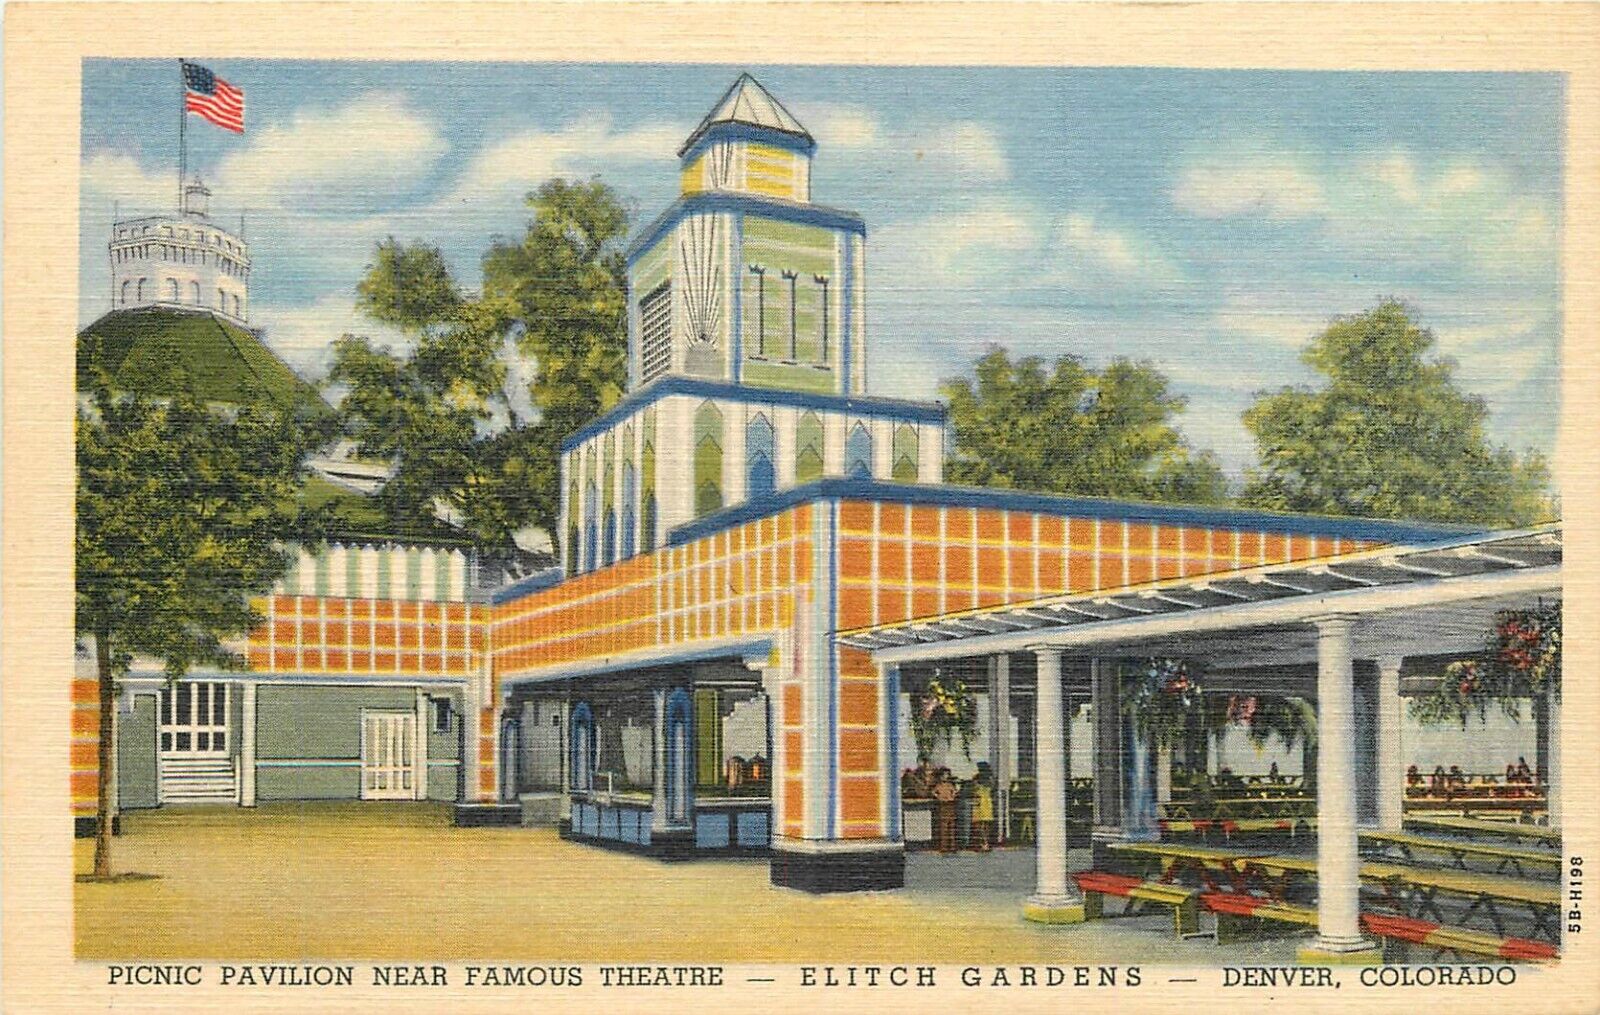 c1940s Elitch Gardens Amusement Park Picnic Pavilion, Denver, Colorado Postcard